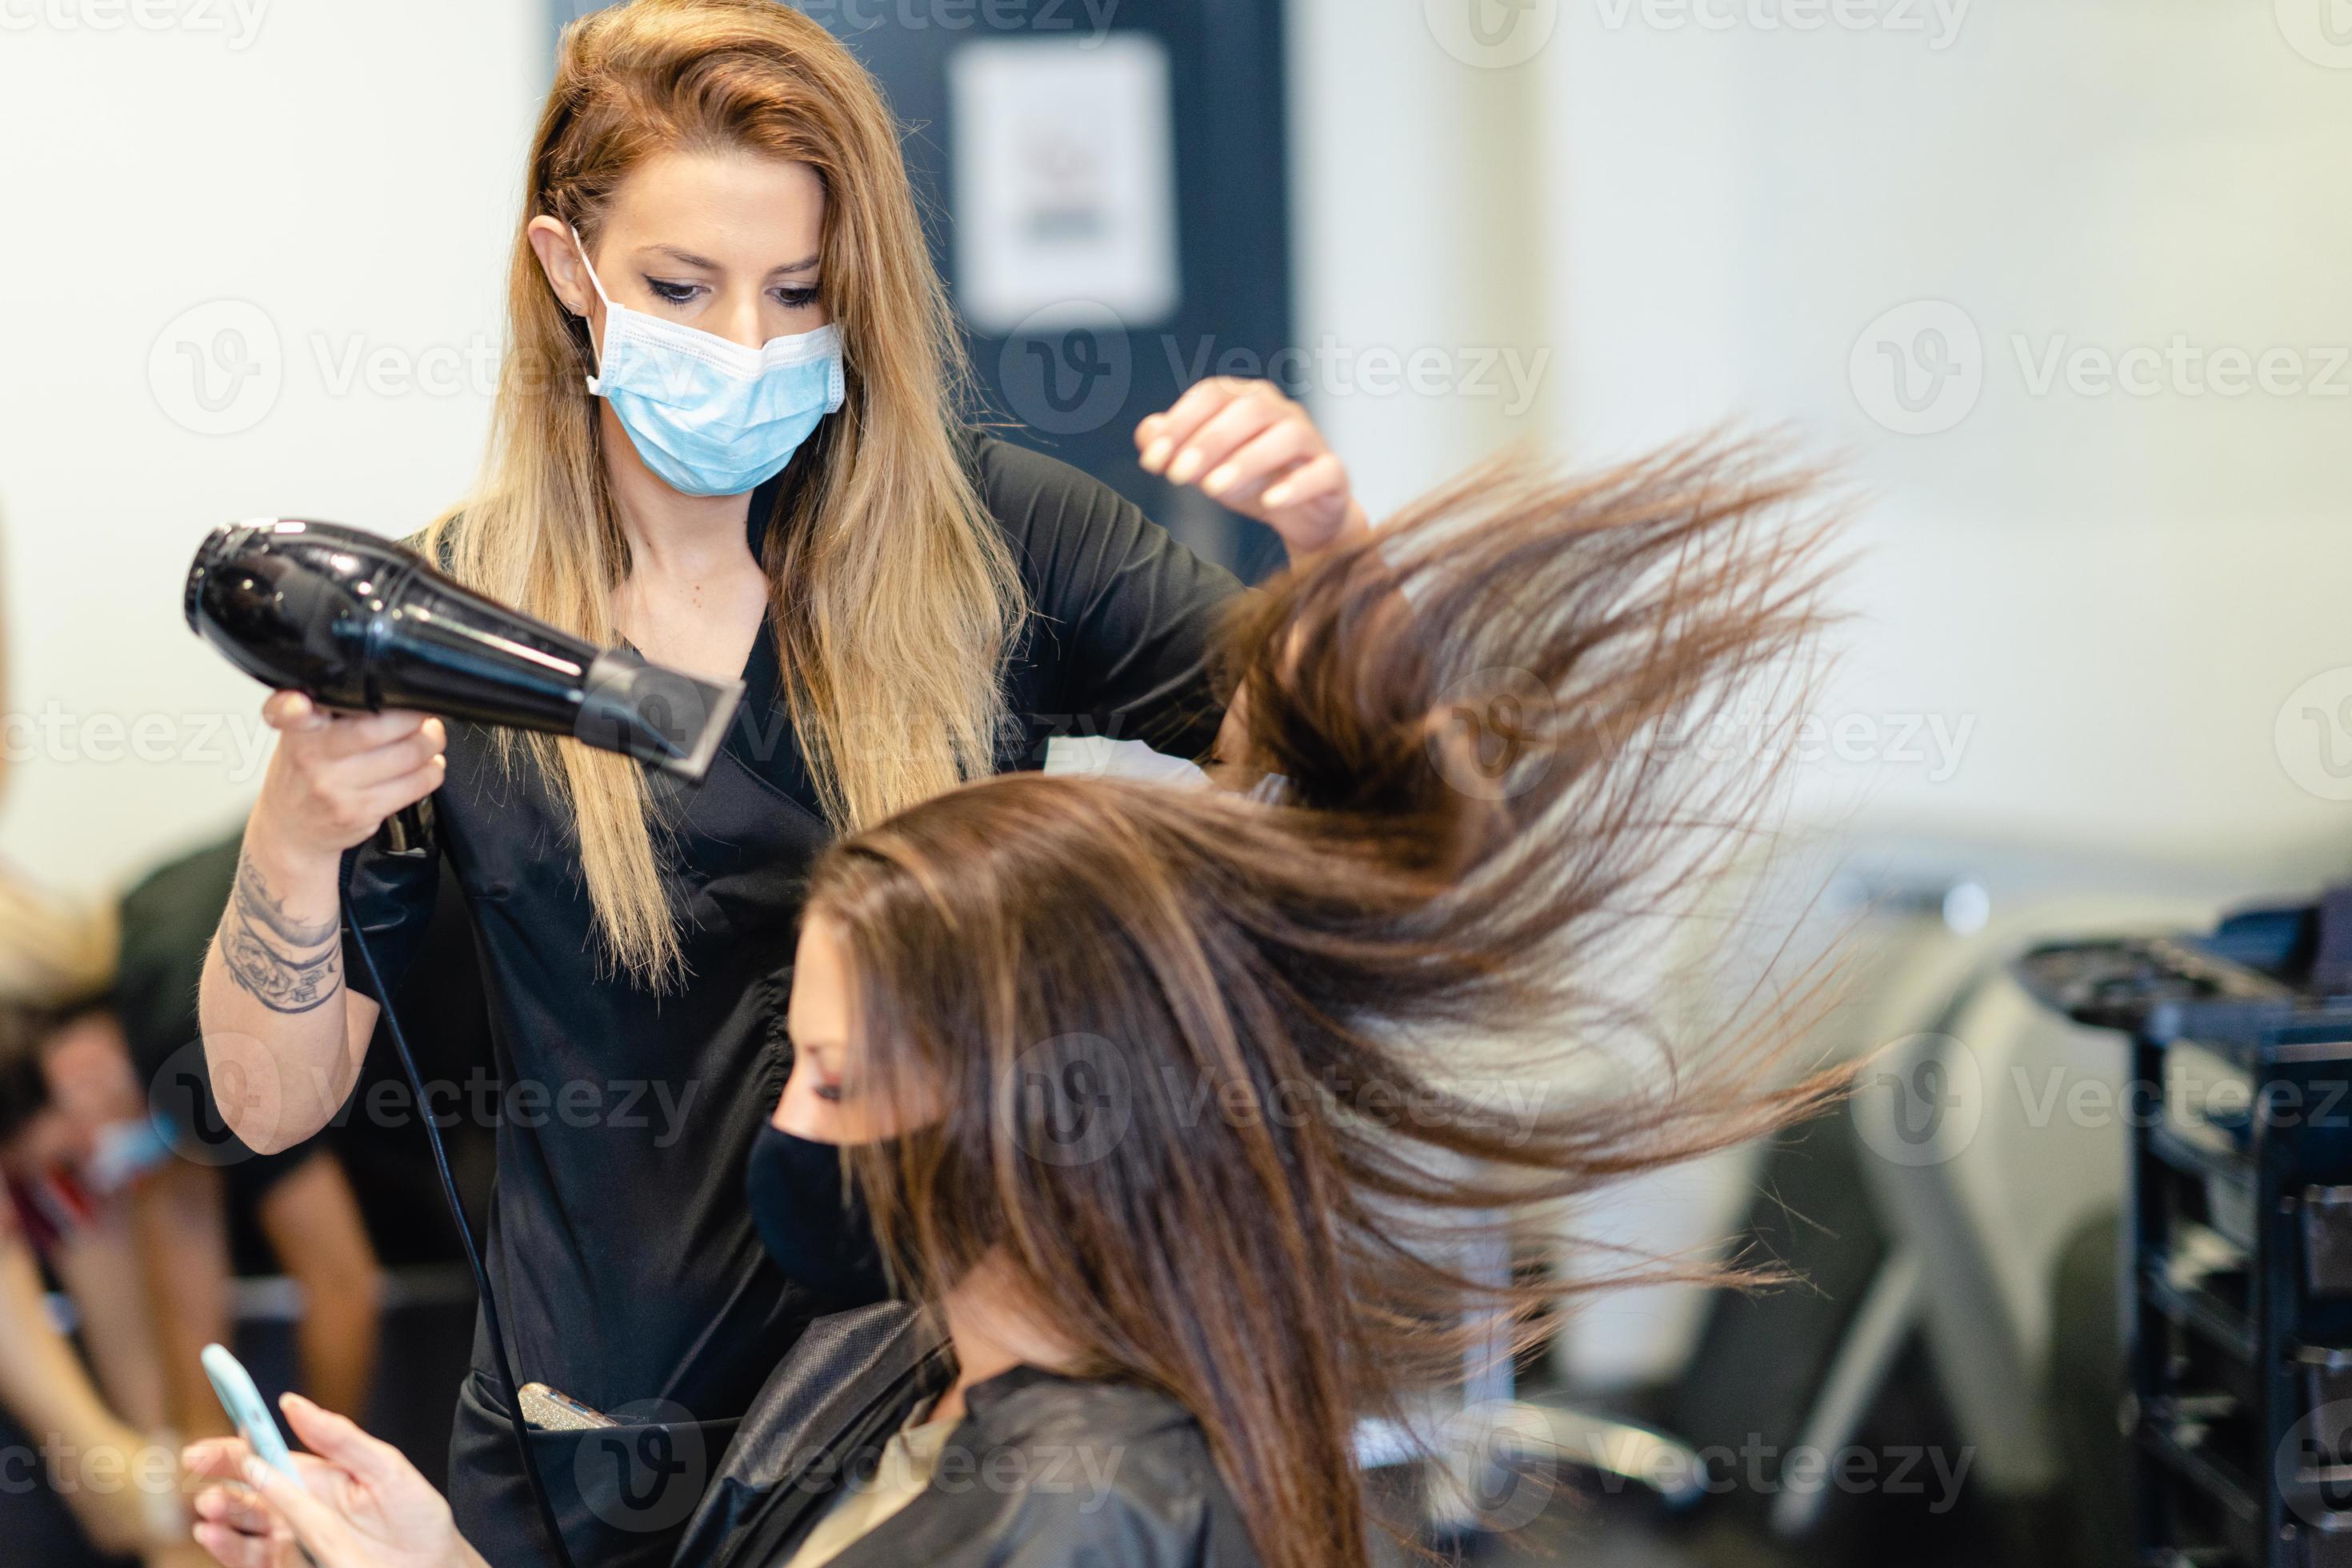 cabeleireiro secando o cabelo de seu cliente com um secador de